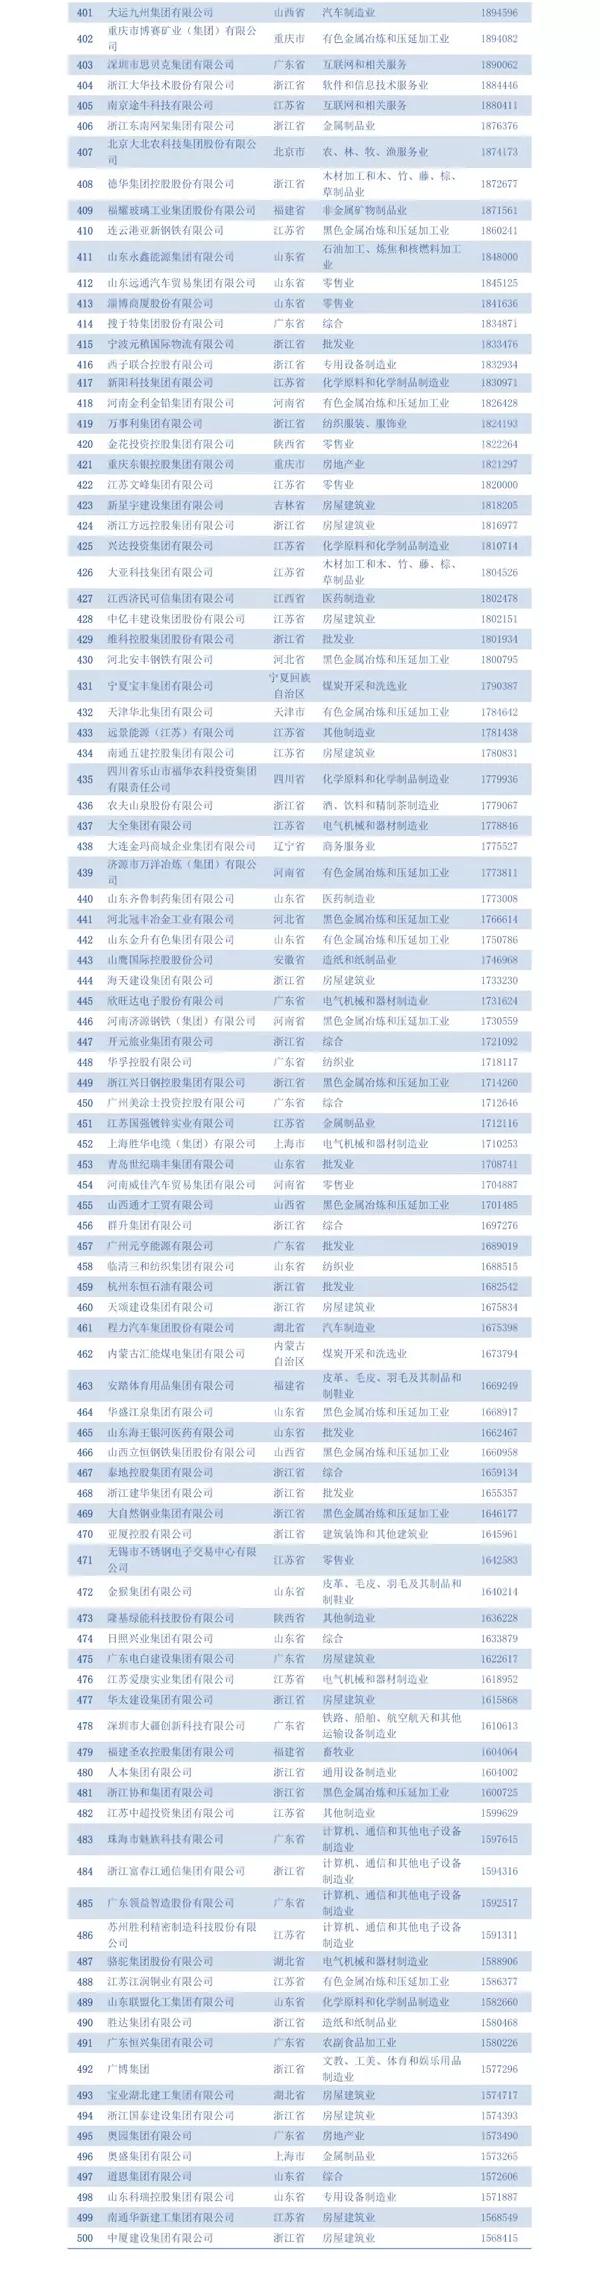 2018中国民营企业五百强名单四百名至五百名